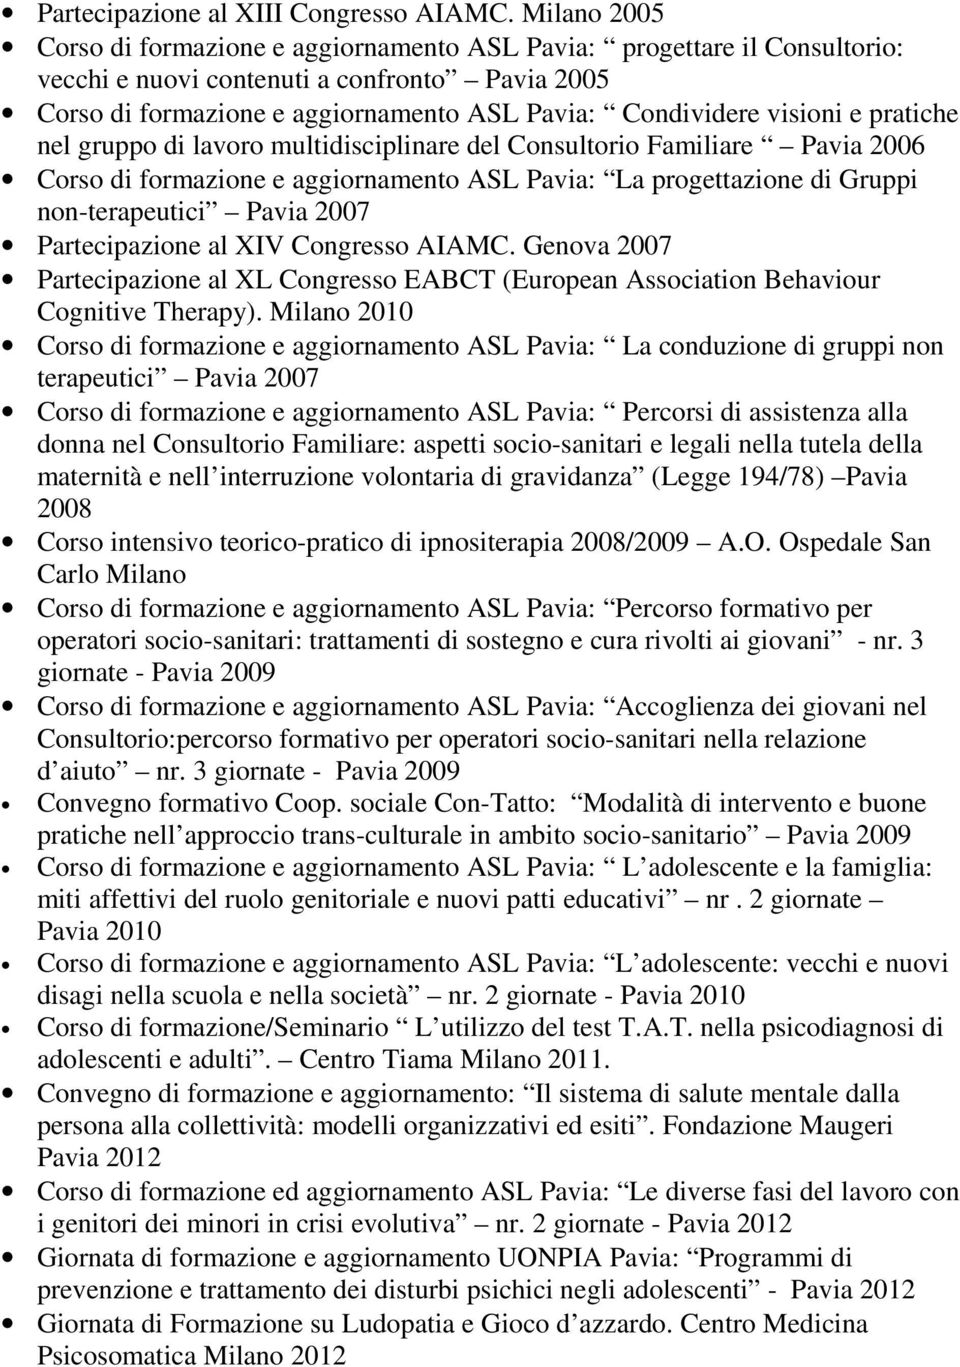 visioni e pratiche nel gruppo di lavoro multidisciplinare del Consultorio Familiare Pavia 2006 Corso di formazione e aggiornamento ASL Pavia: La progettazione di Gruppi non-terapeutici Pavia 2007